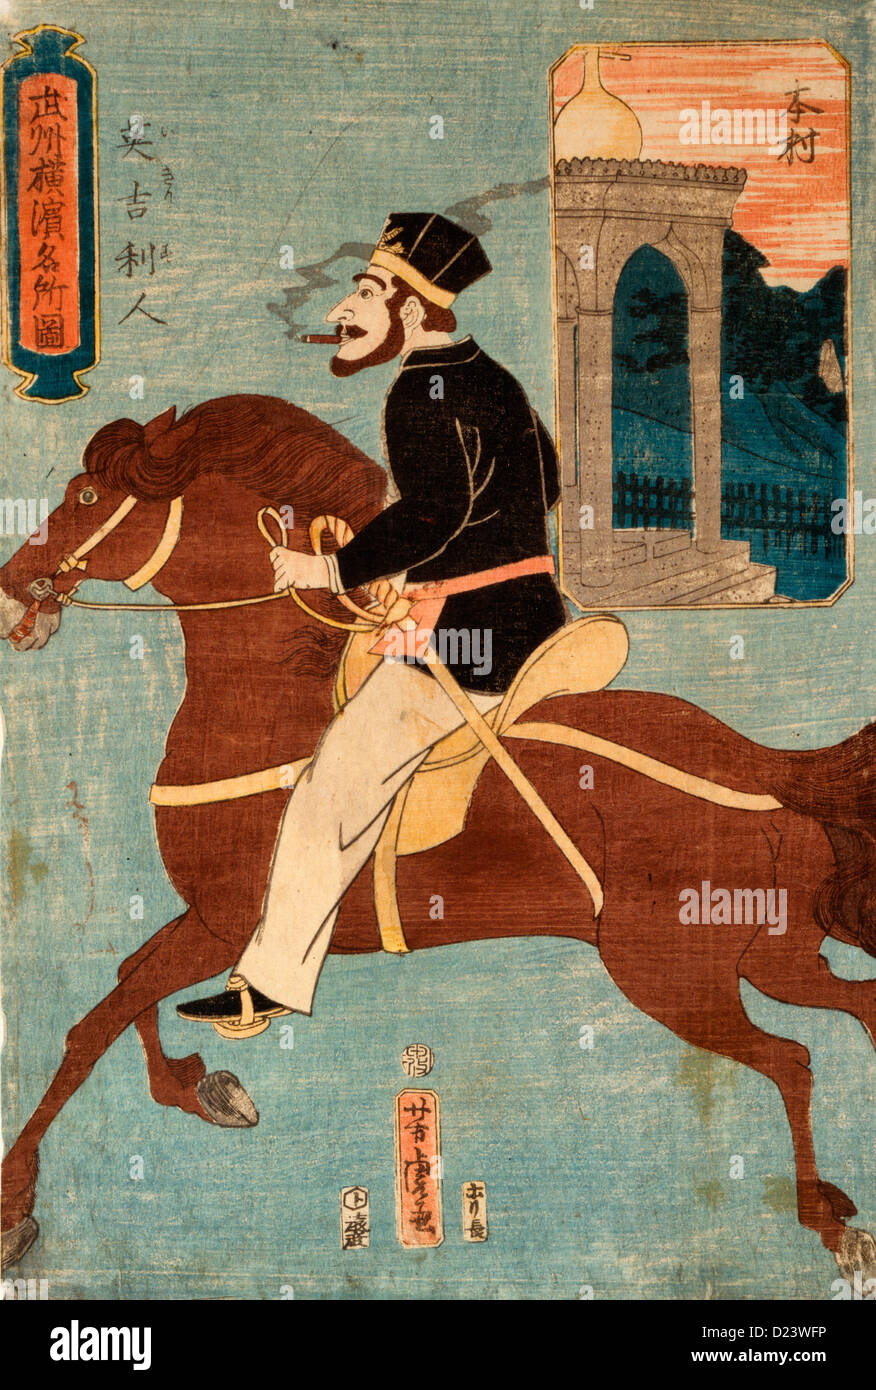 Stampa giapponese mostra un inglese di fumare un sigaro o sigaretta, mentre passeggiate a cavallo. Illustrazione di piccole dimensioni in background che mostra un tempio, circa 1860 Foto Stock